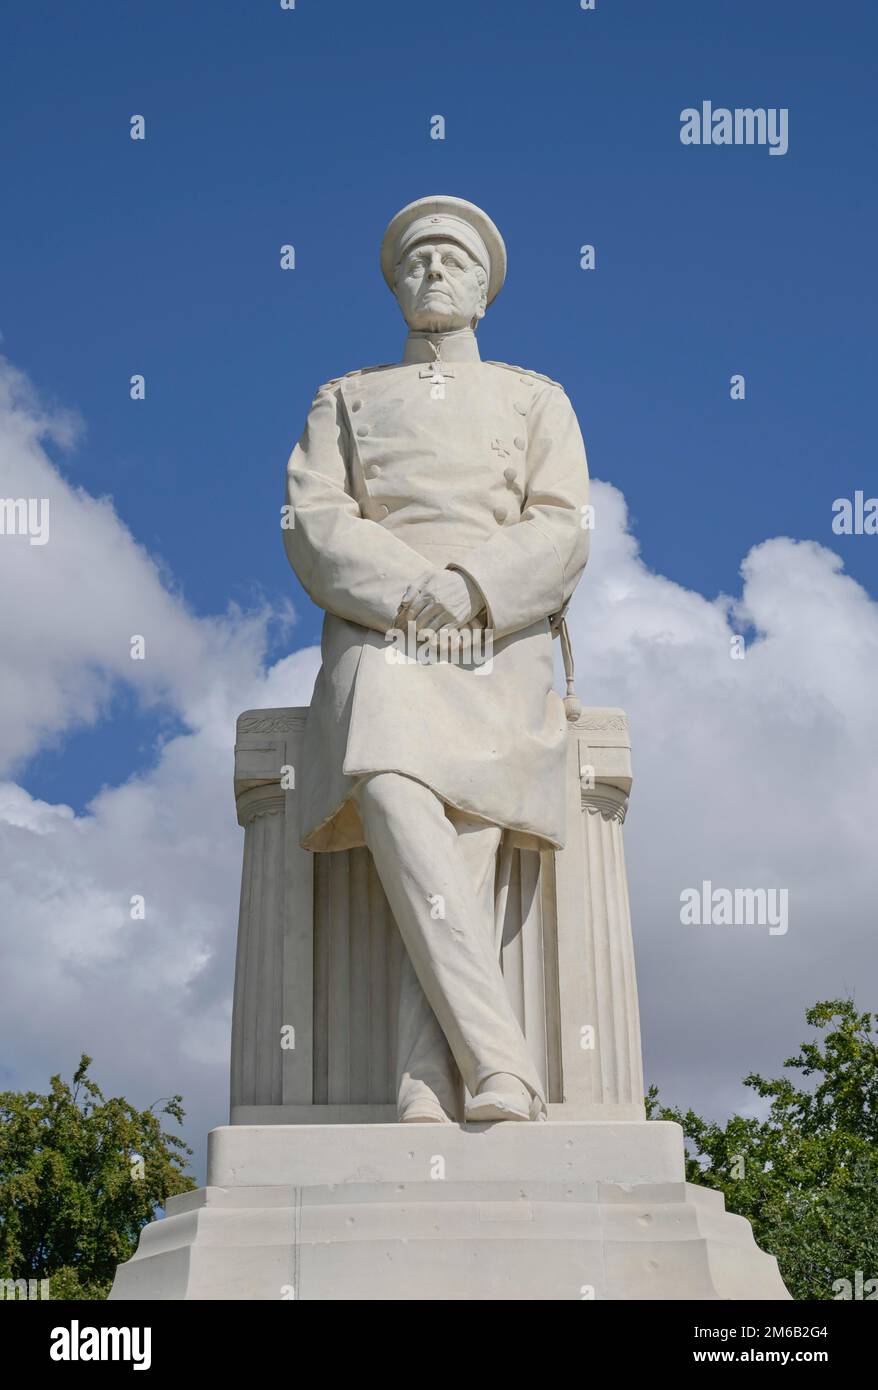 Monument, Helmuth Karl Bernhard von Moltke, Grosser Stern, Tiergarten, Mitte, Berlin, Germany Stock Photo